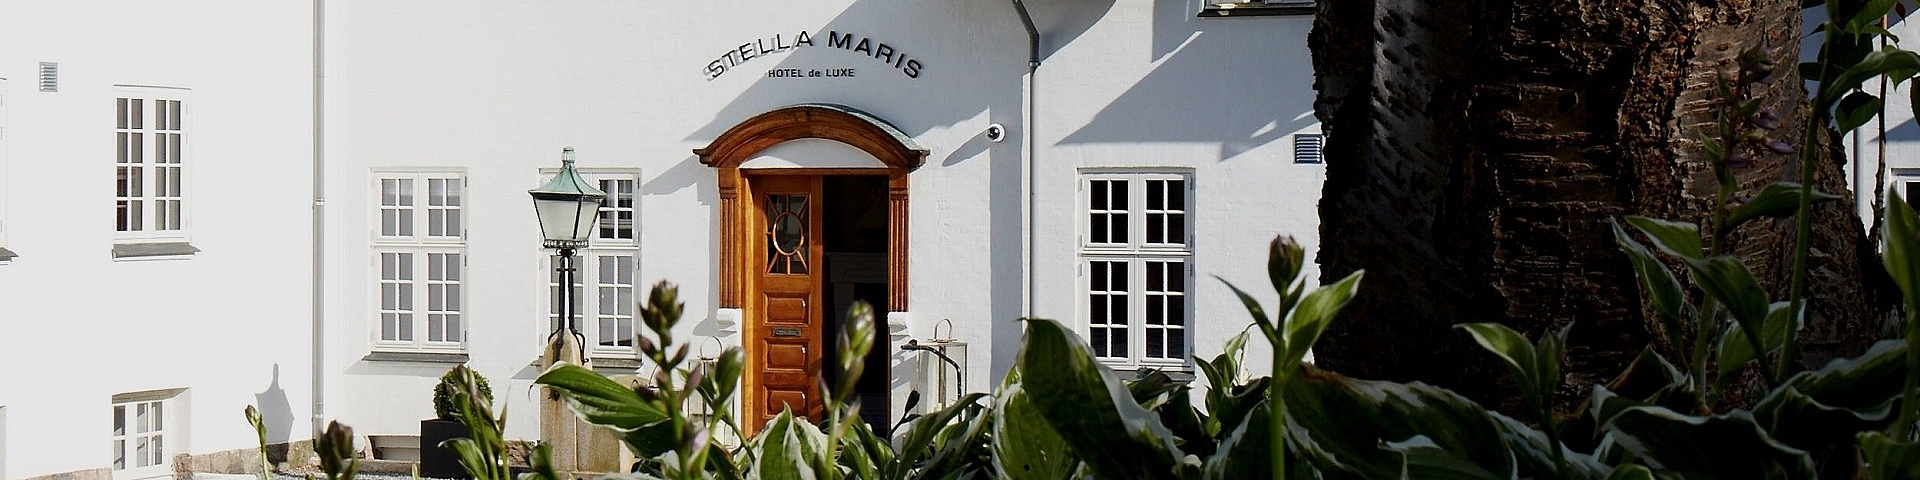 Stella Maris Hotel De Luxe | Golf på Fyn